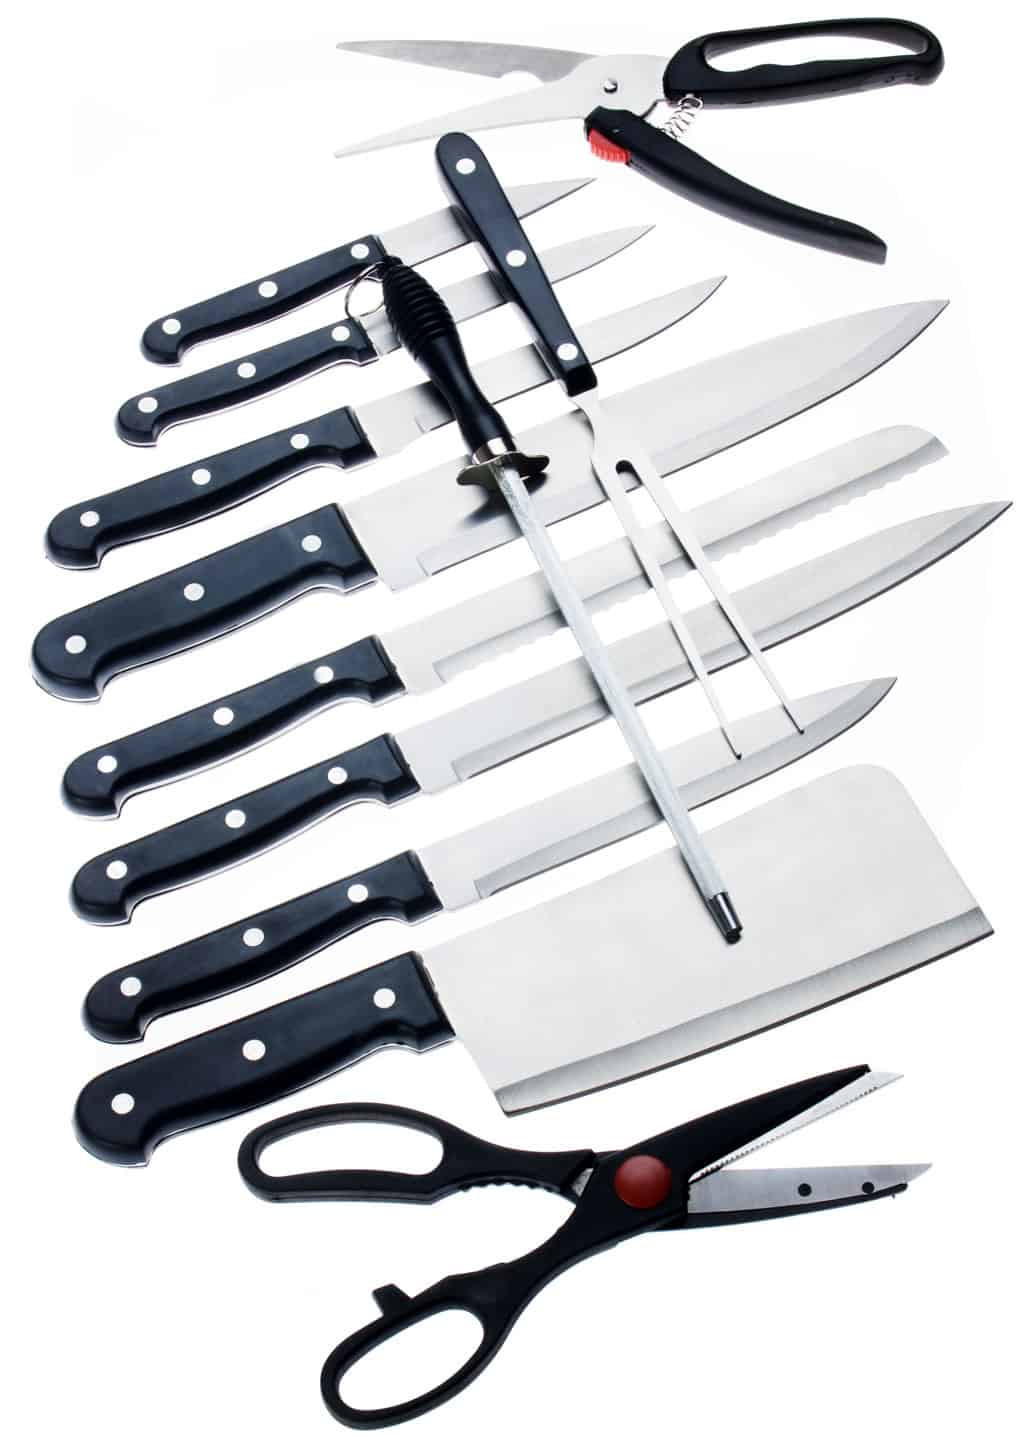 fillet knives